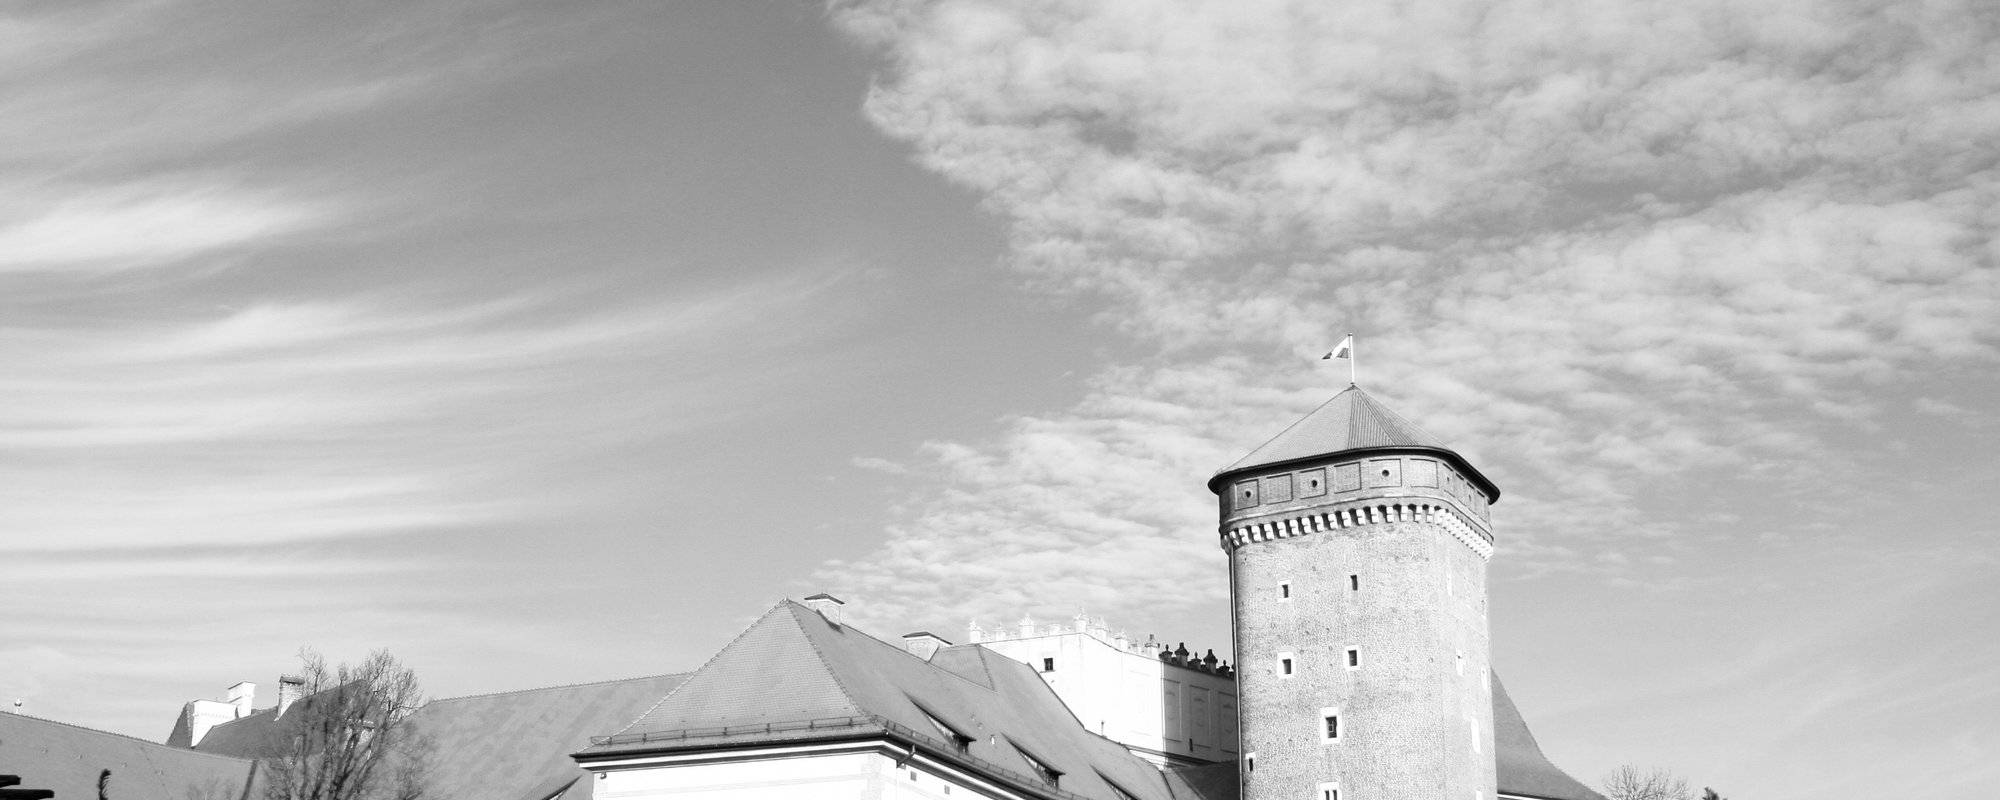 Tower Of Wawel